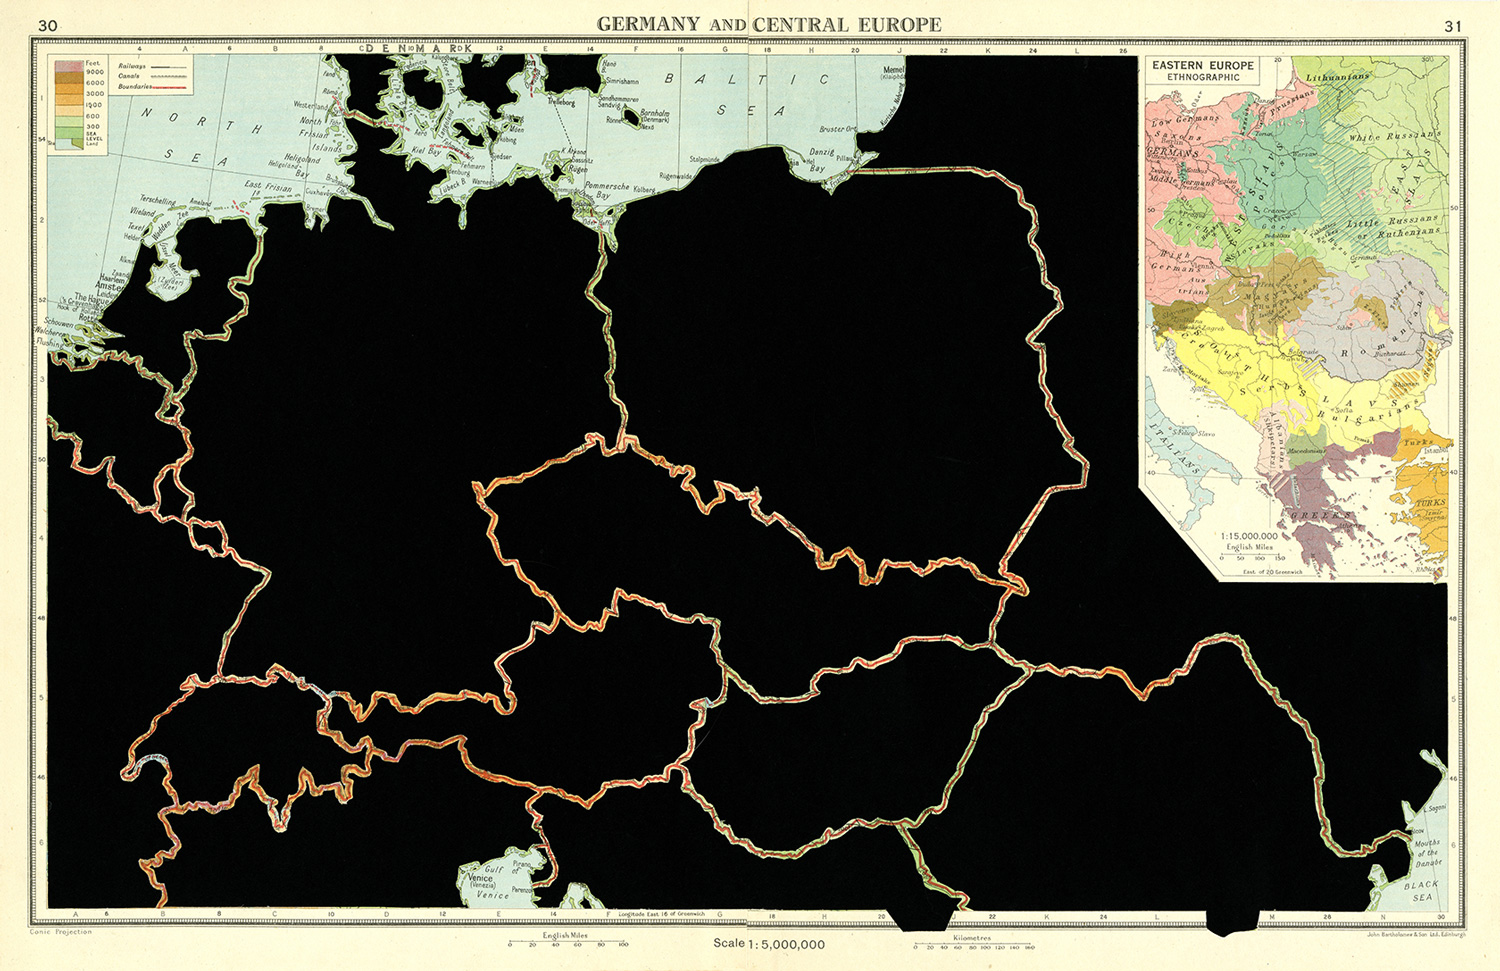 GERMANY AND CENTRAL EUROPE. De la serie: The Comparative Atlas. London 1948. 
Páginas de libros recortadas. 
42,7 x 27,7 cm. 
2017.